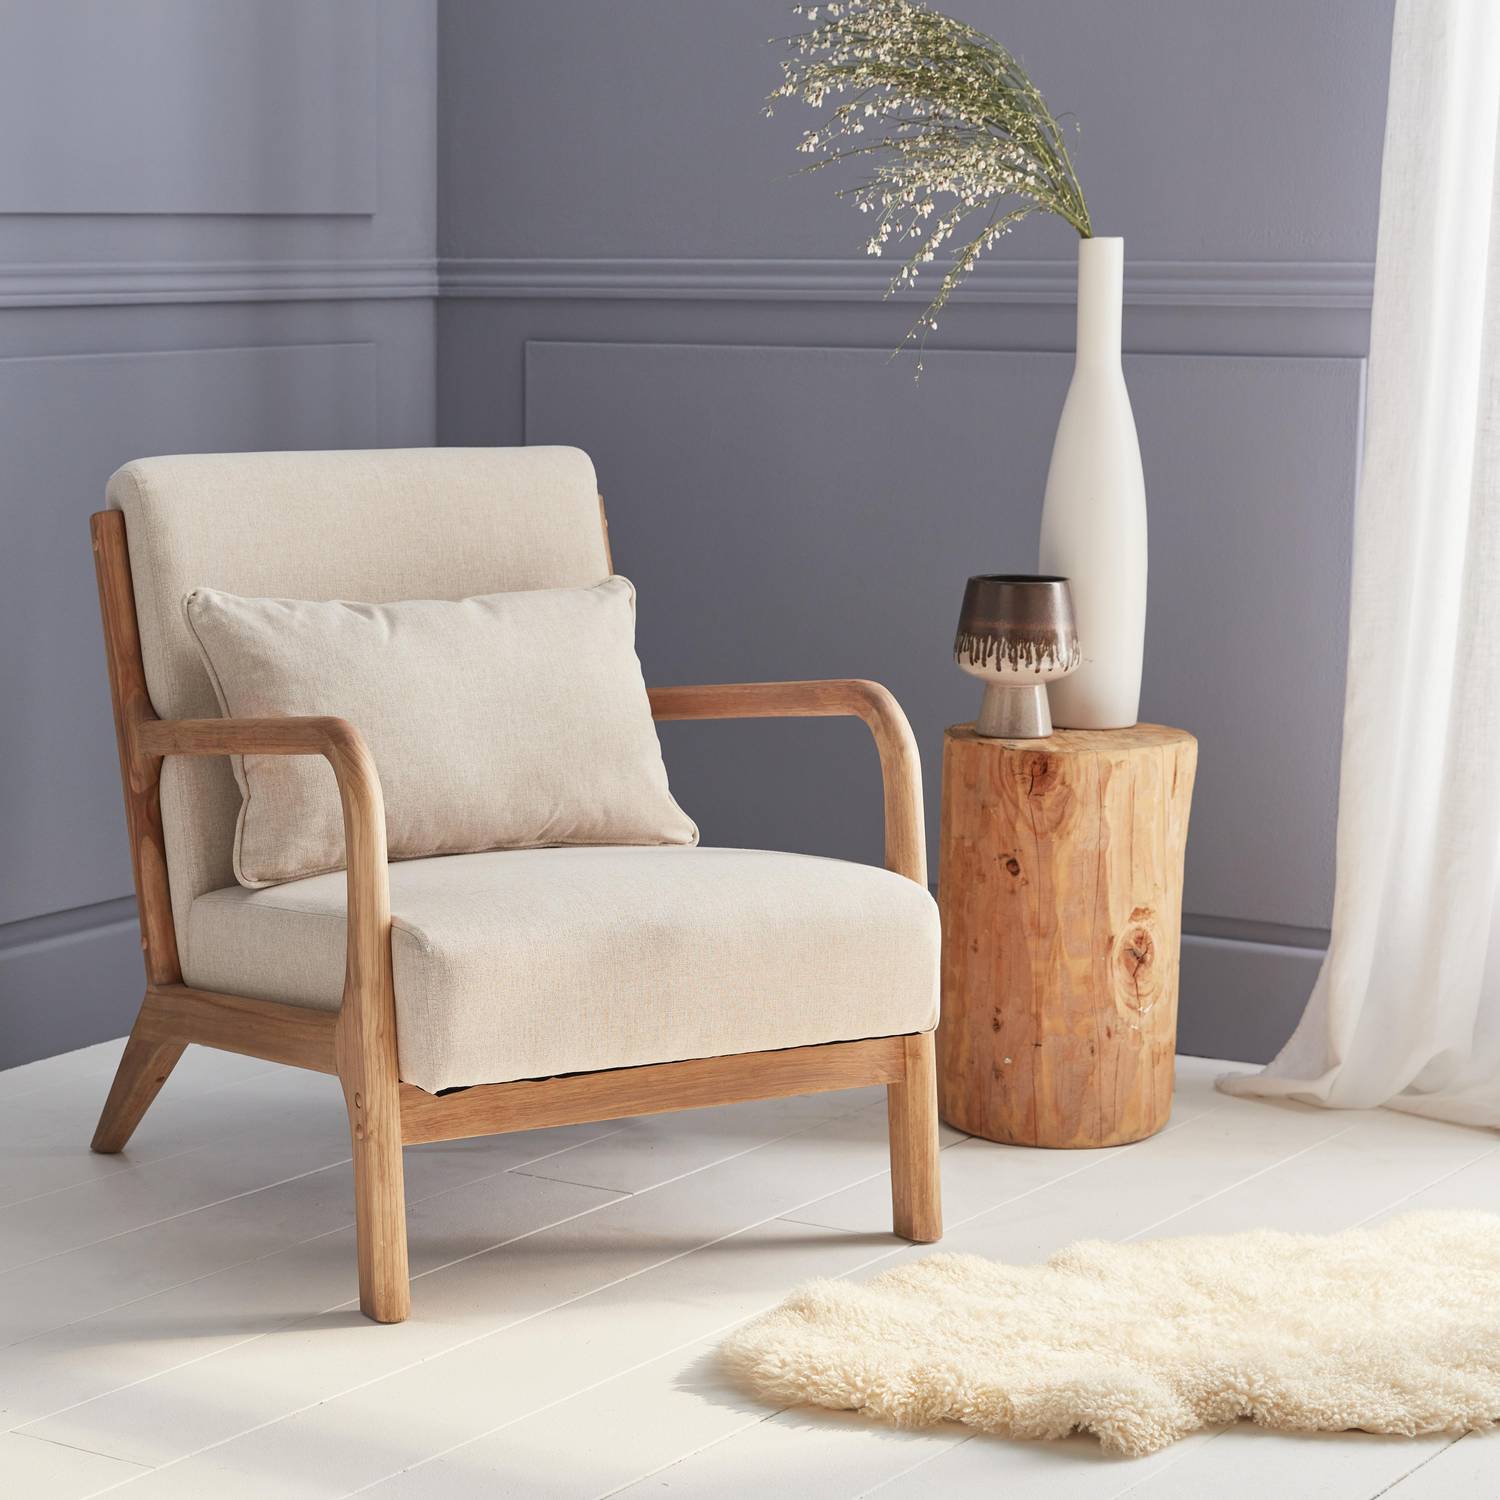 Fauteuil design en bois et tissu, 1 place droit fixe, pieds compas scandinave, structure en bois solide, assise confortable beige Photo1